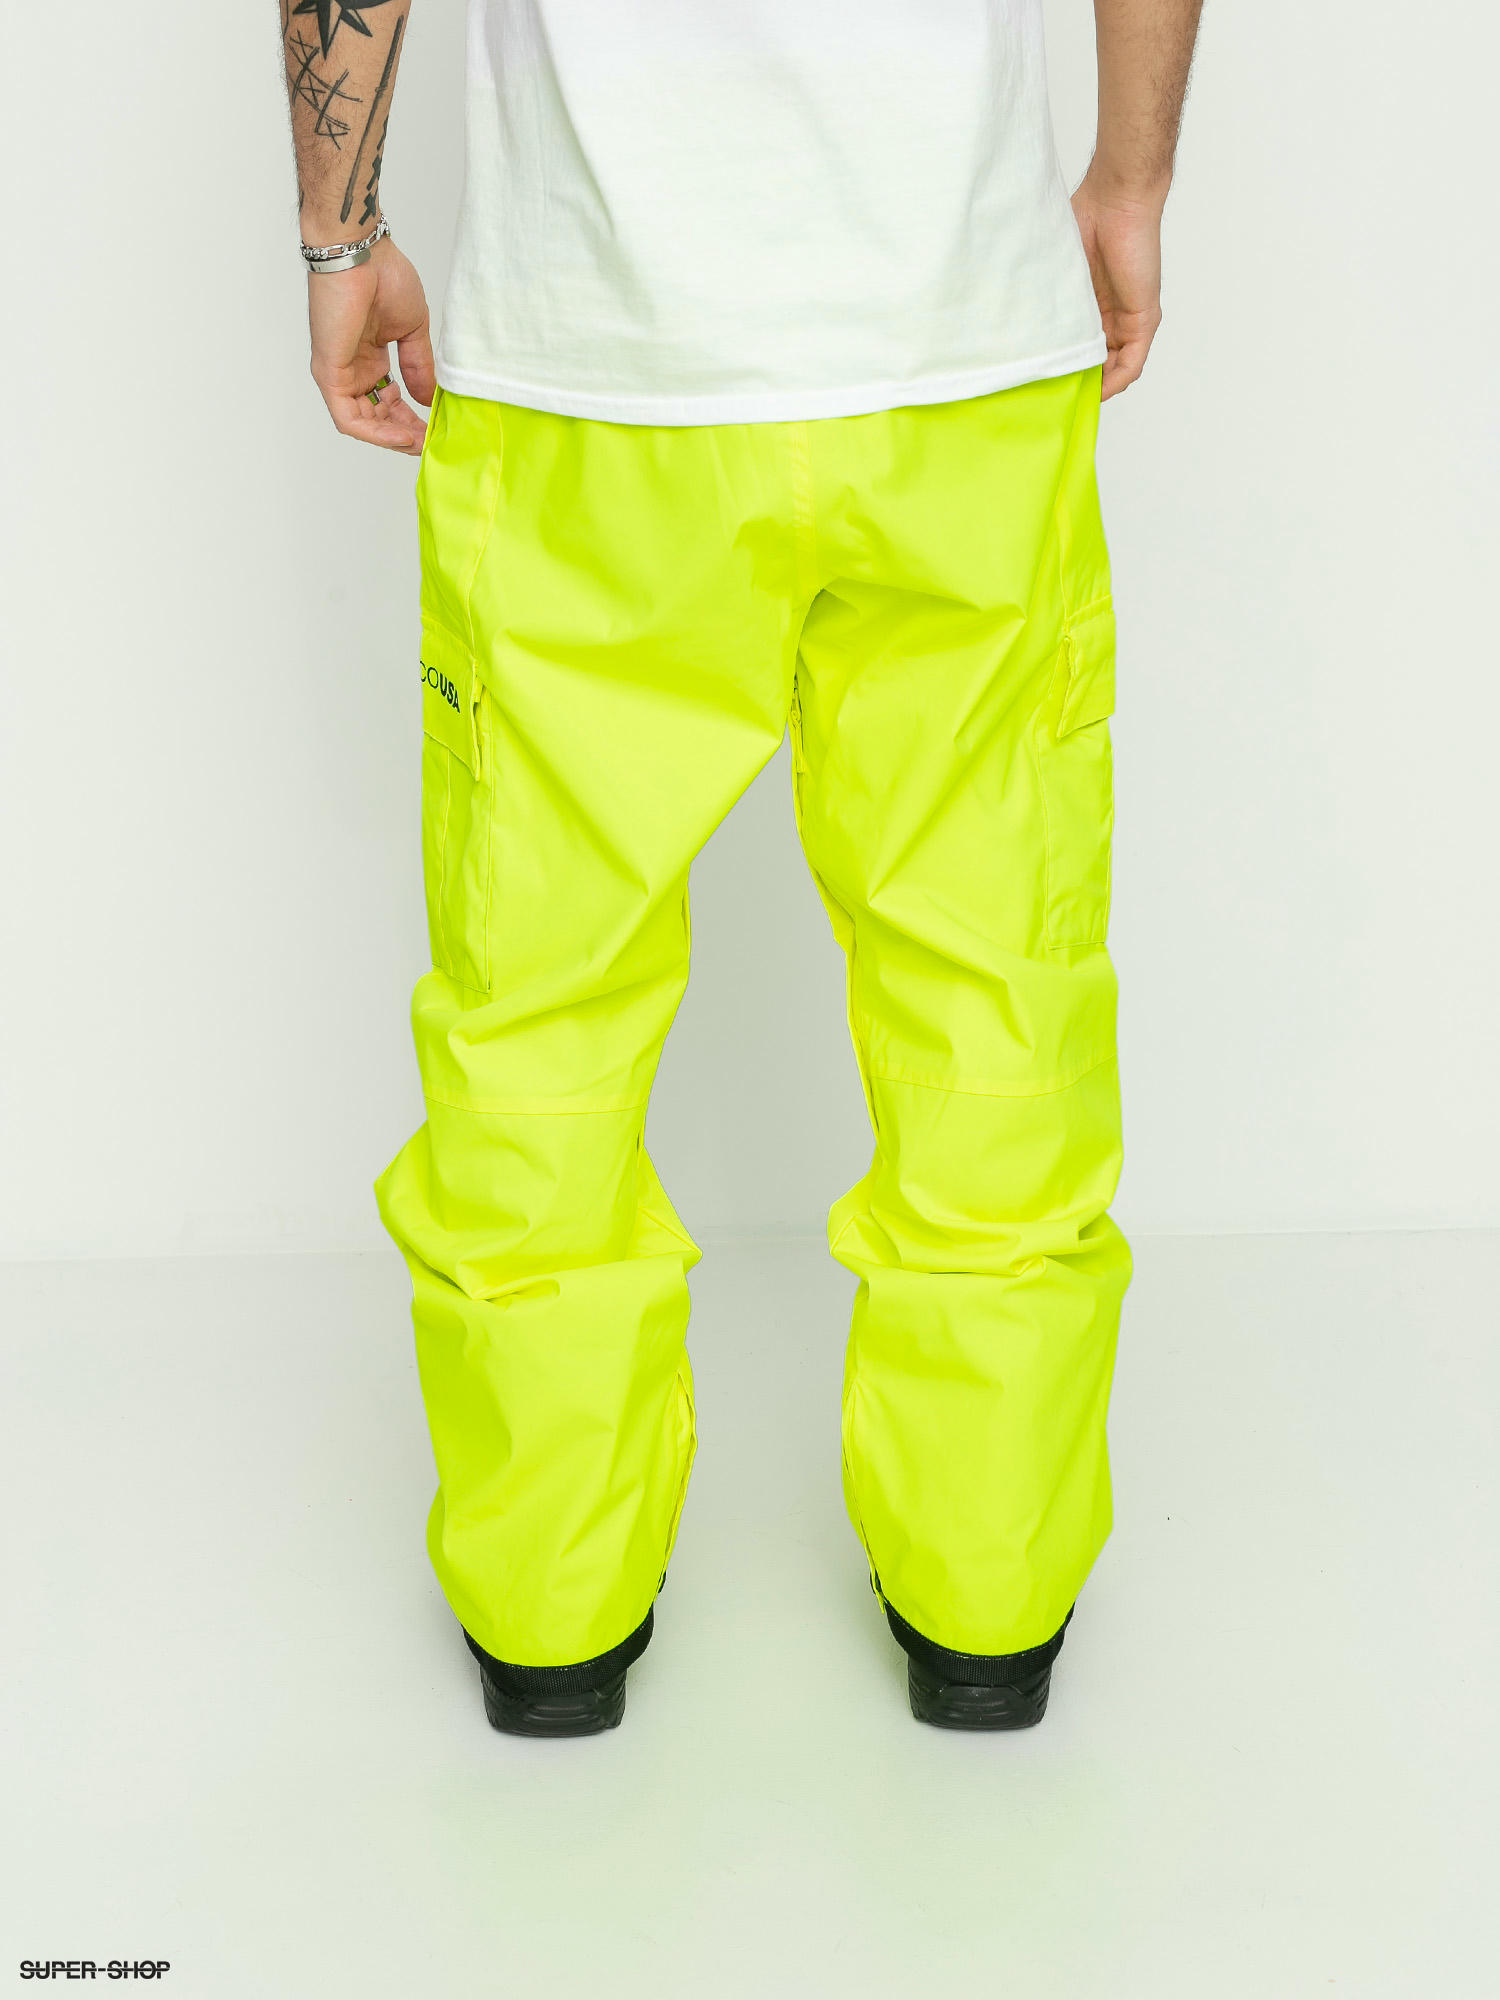 12 DC Banshee Snowboard Pants Kids Sz L Safety Yellow